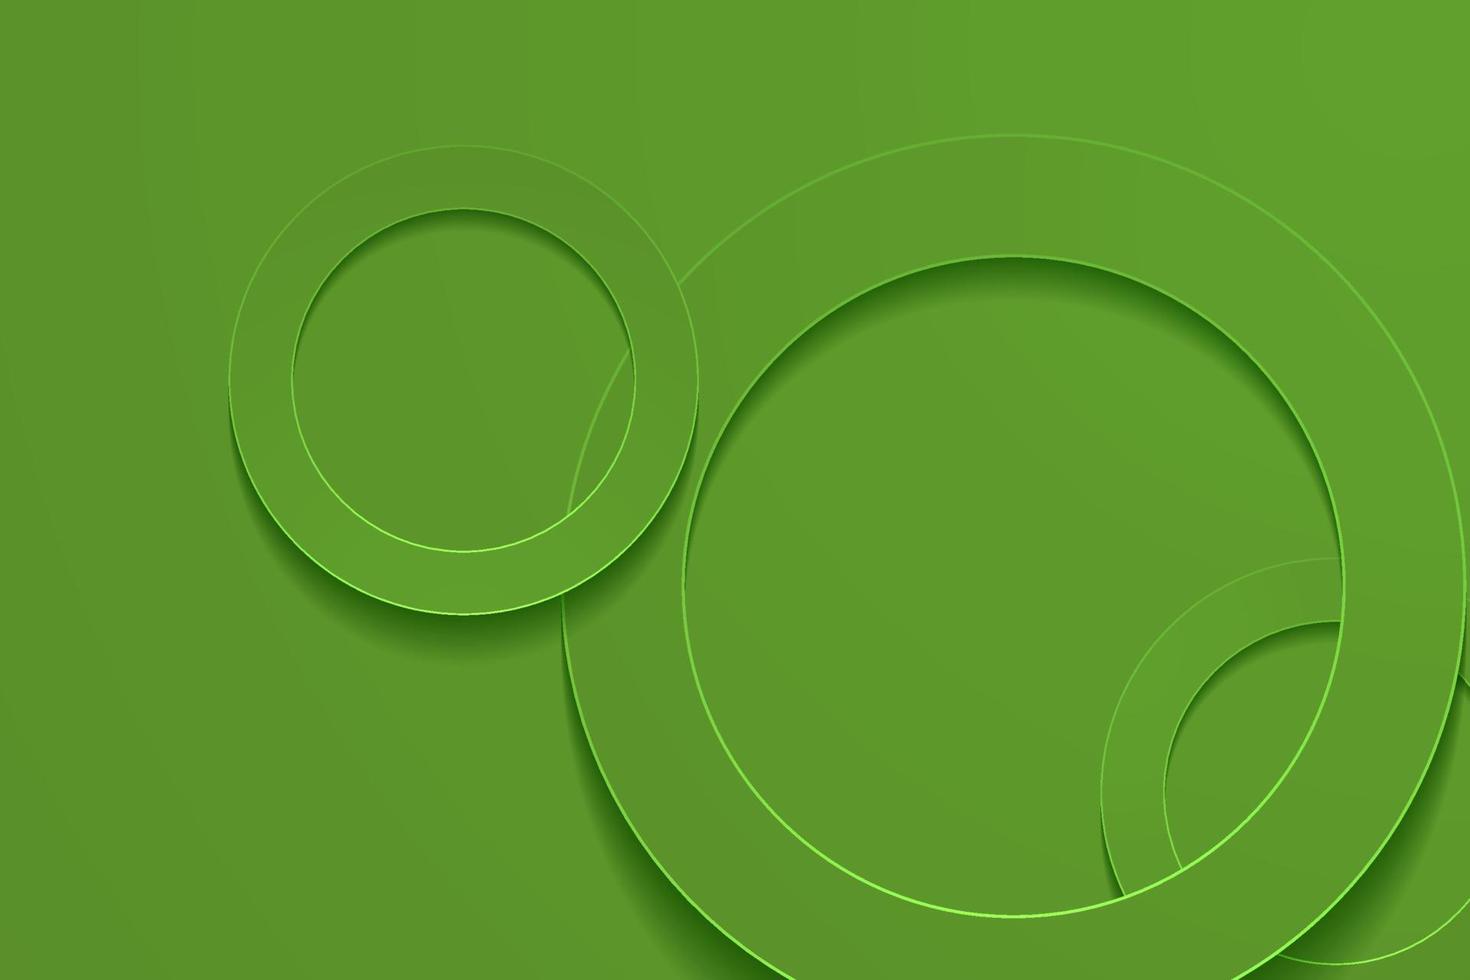 fundos verde-oliva monótonos modernos. fundo da camada papercut do círculo 3d. vetor